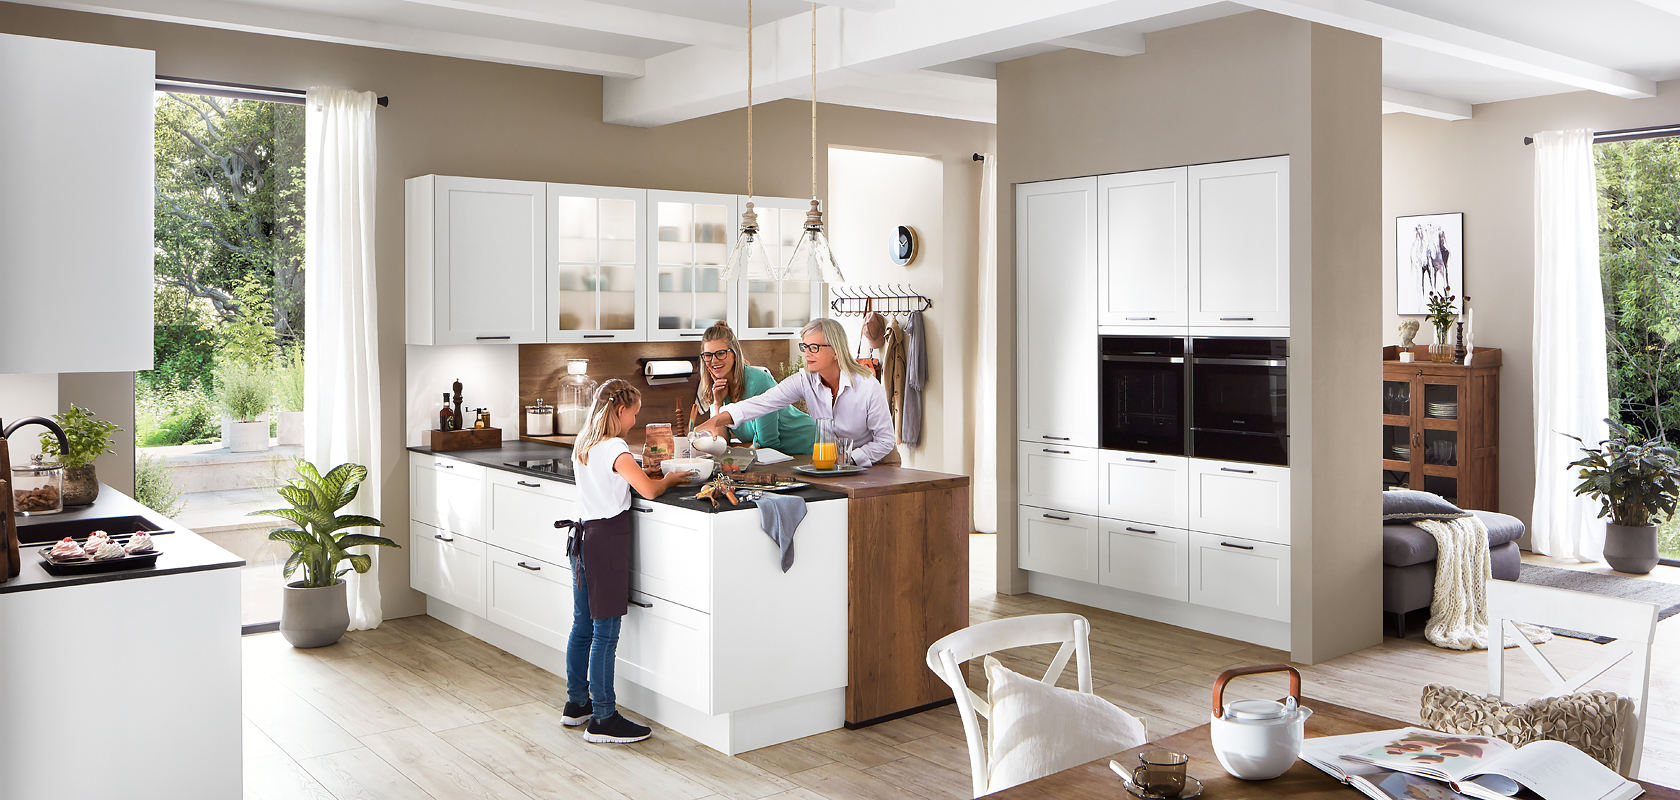 Moderní kuchyně plná přirozeného světla, kde rodina tráví čas společně, s elegantními bílými skříňkami a nerezovými spotřebiči.